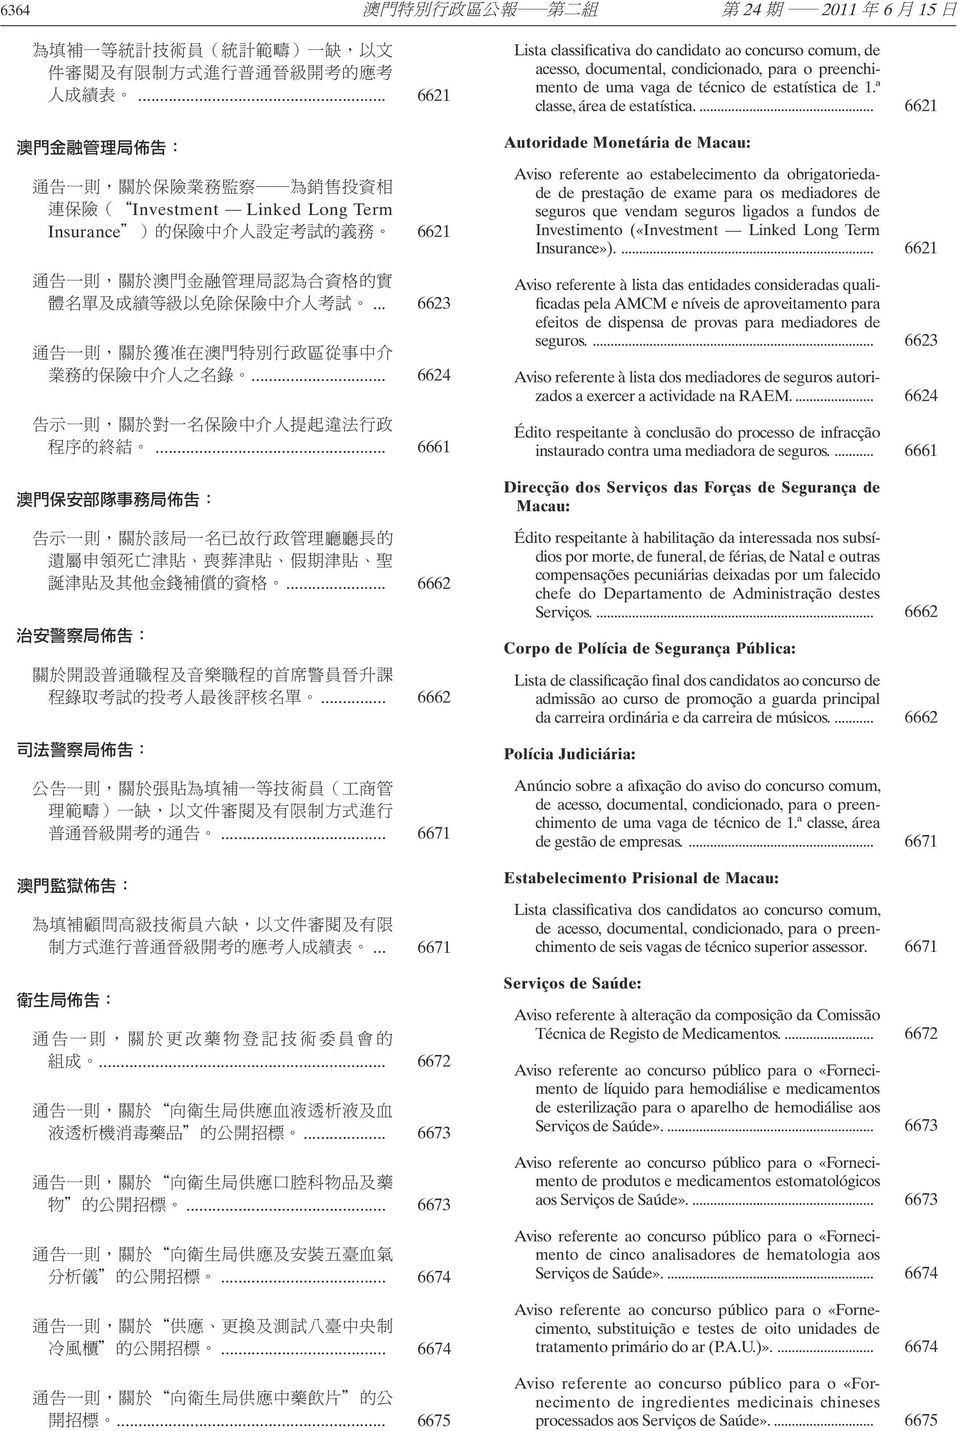 ... 6621 Autoridade Monetária de Macau: Aviso referente ao estabelecimento da obrigatoriedade de prestação de exame para os mediadores de seguros que vendam seguros ligados a fundos de Investimento